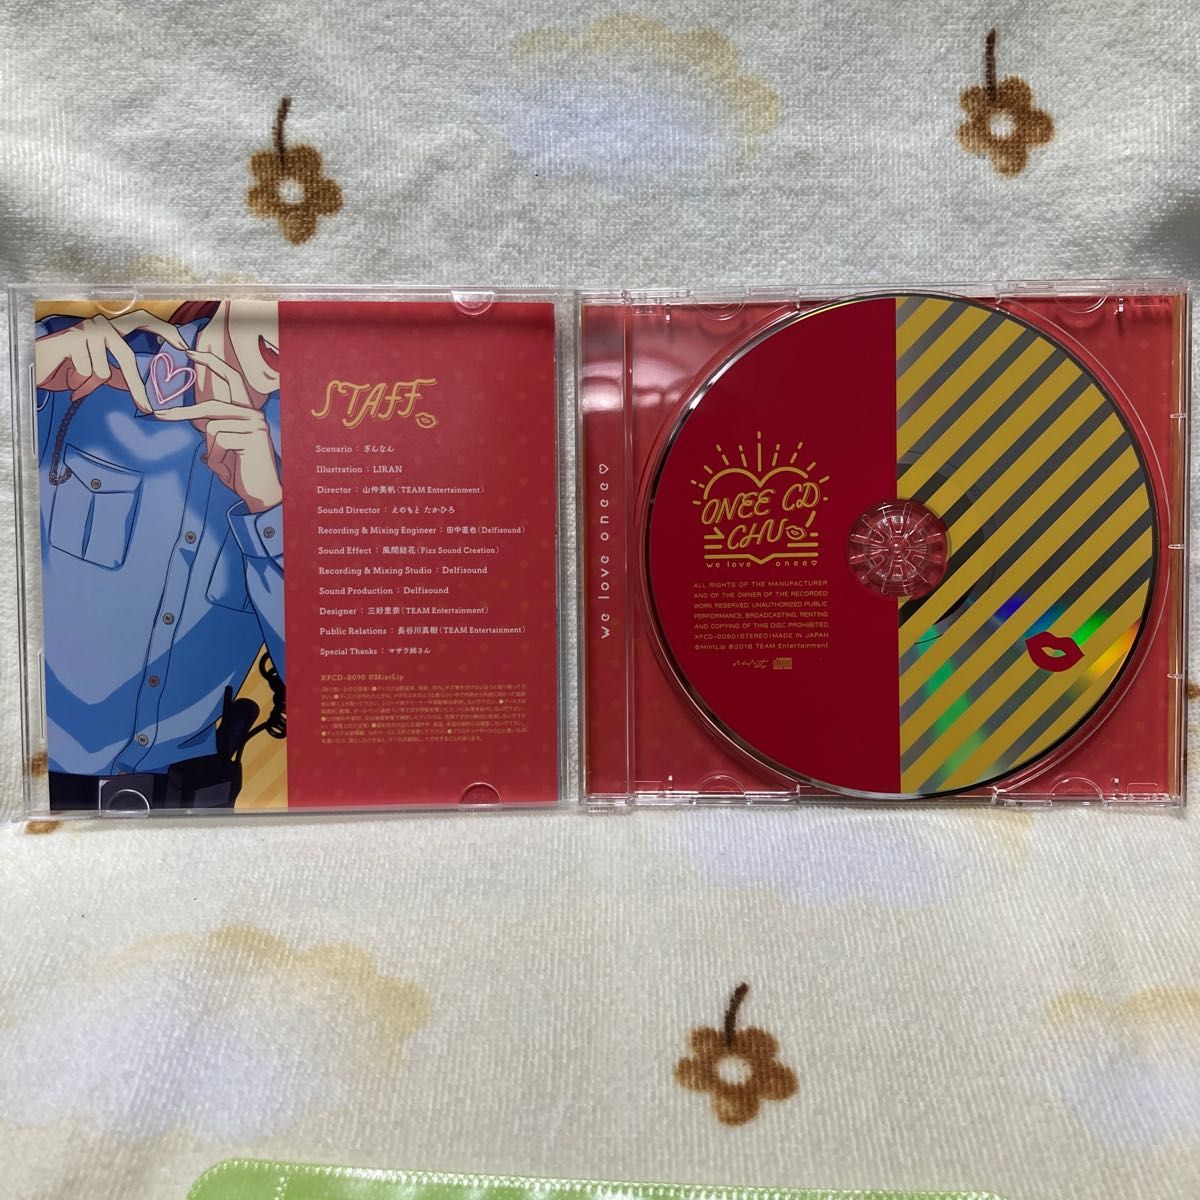 オネェCD CHU vol.1 オネェ警官おケイちゃん CD (ドラマCD) 佐藤拓也　アニメイト特典CD付